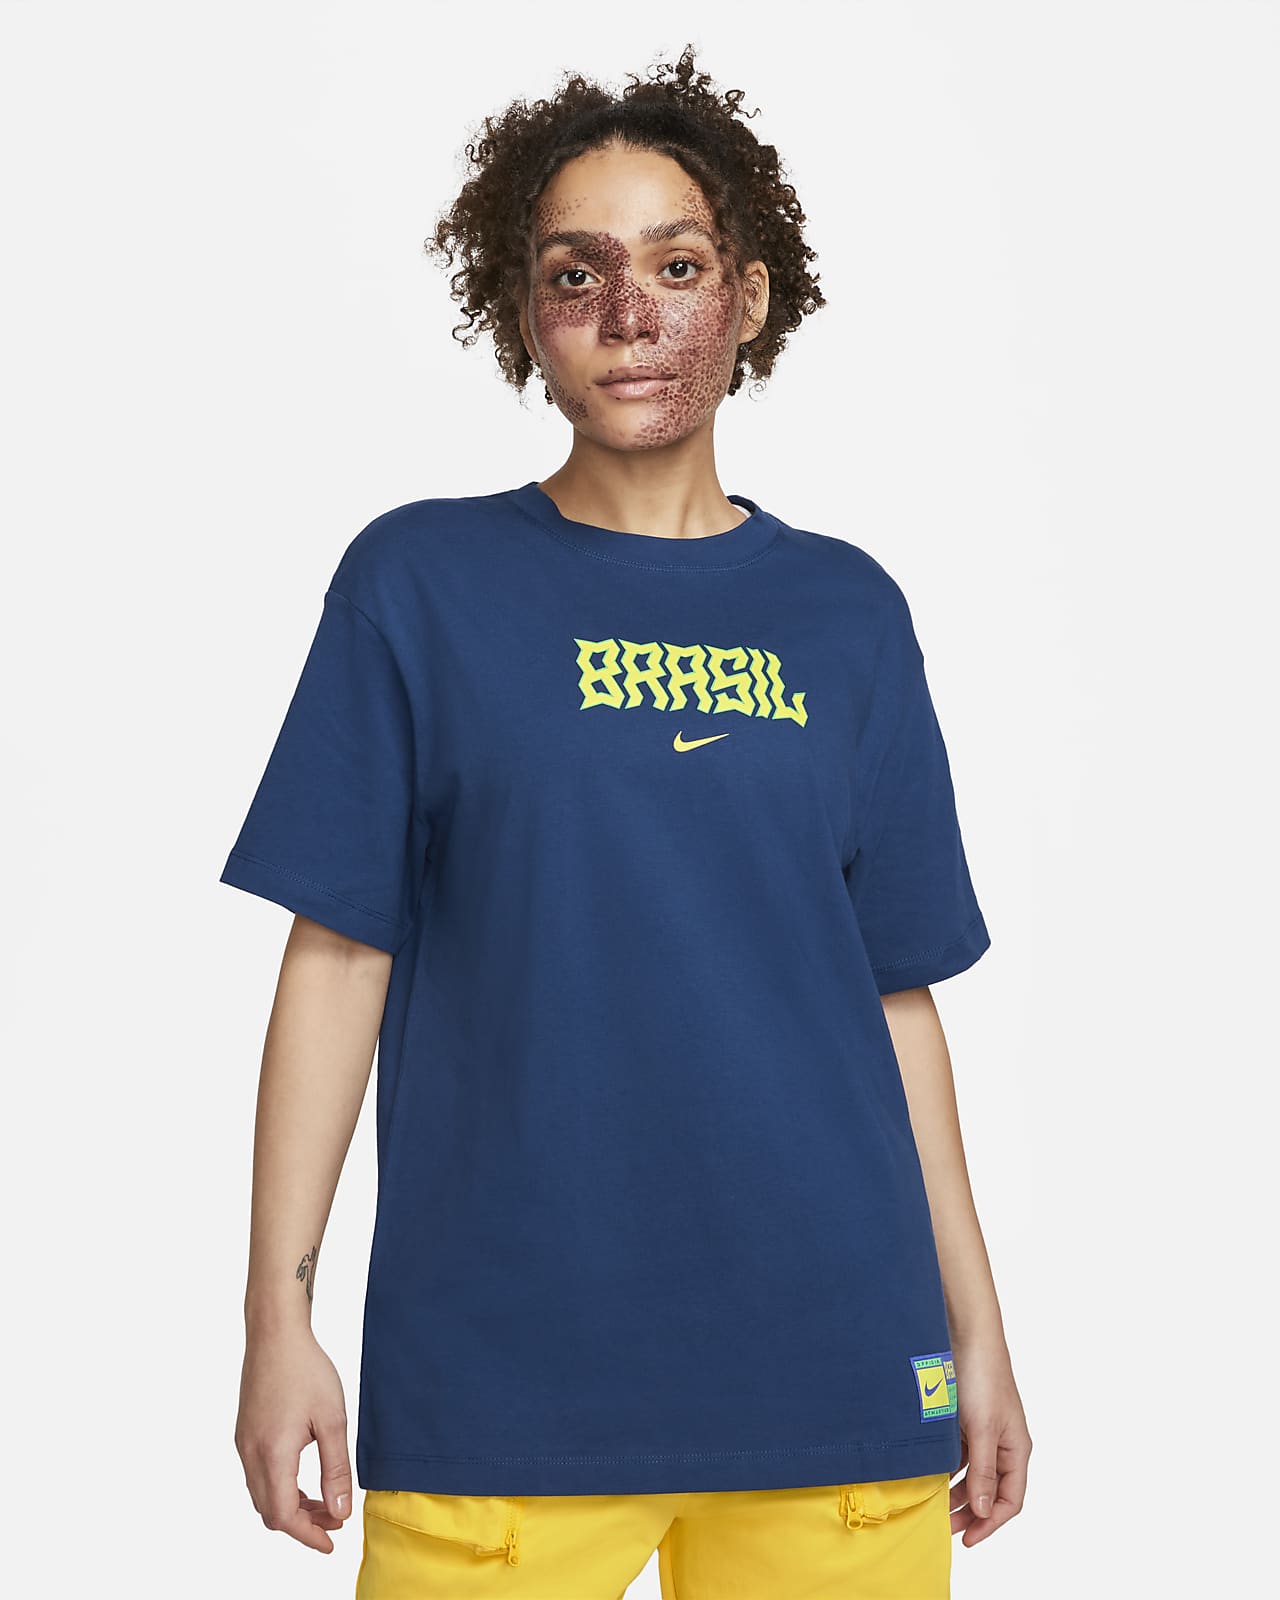 Brazil Swoosh Women's Nike T-Shirt